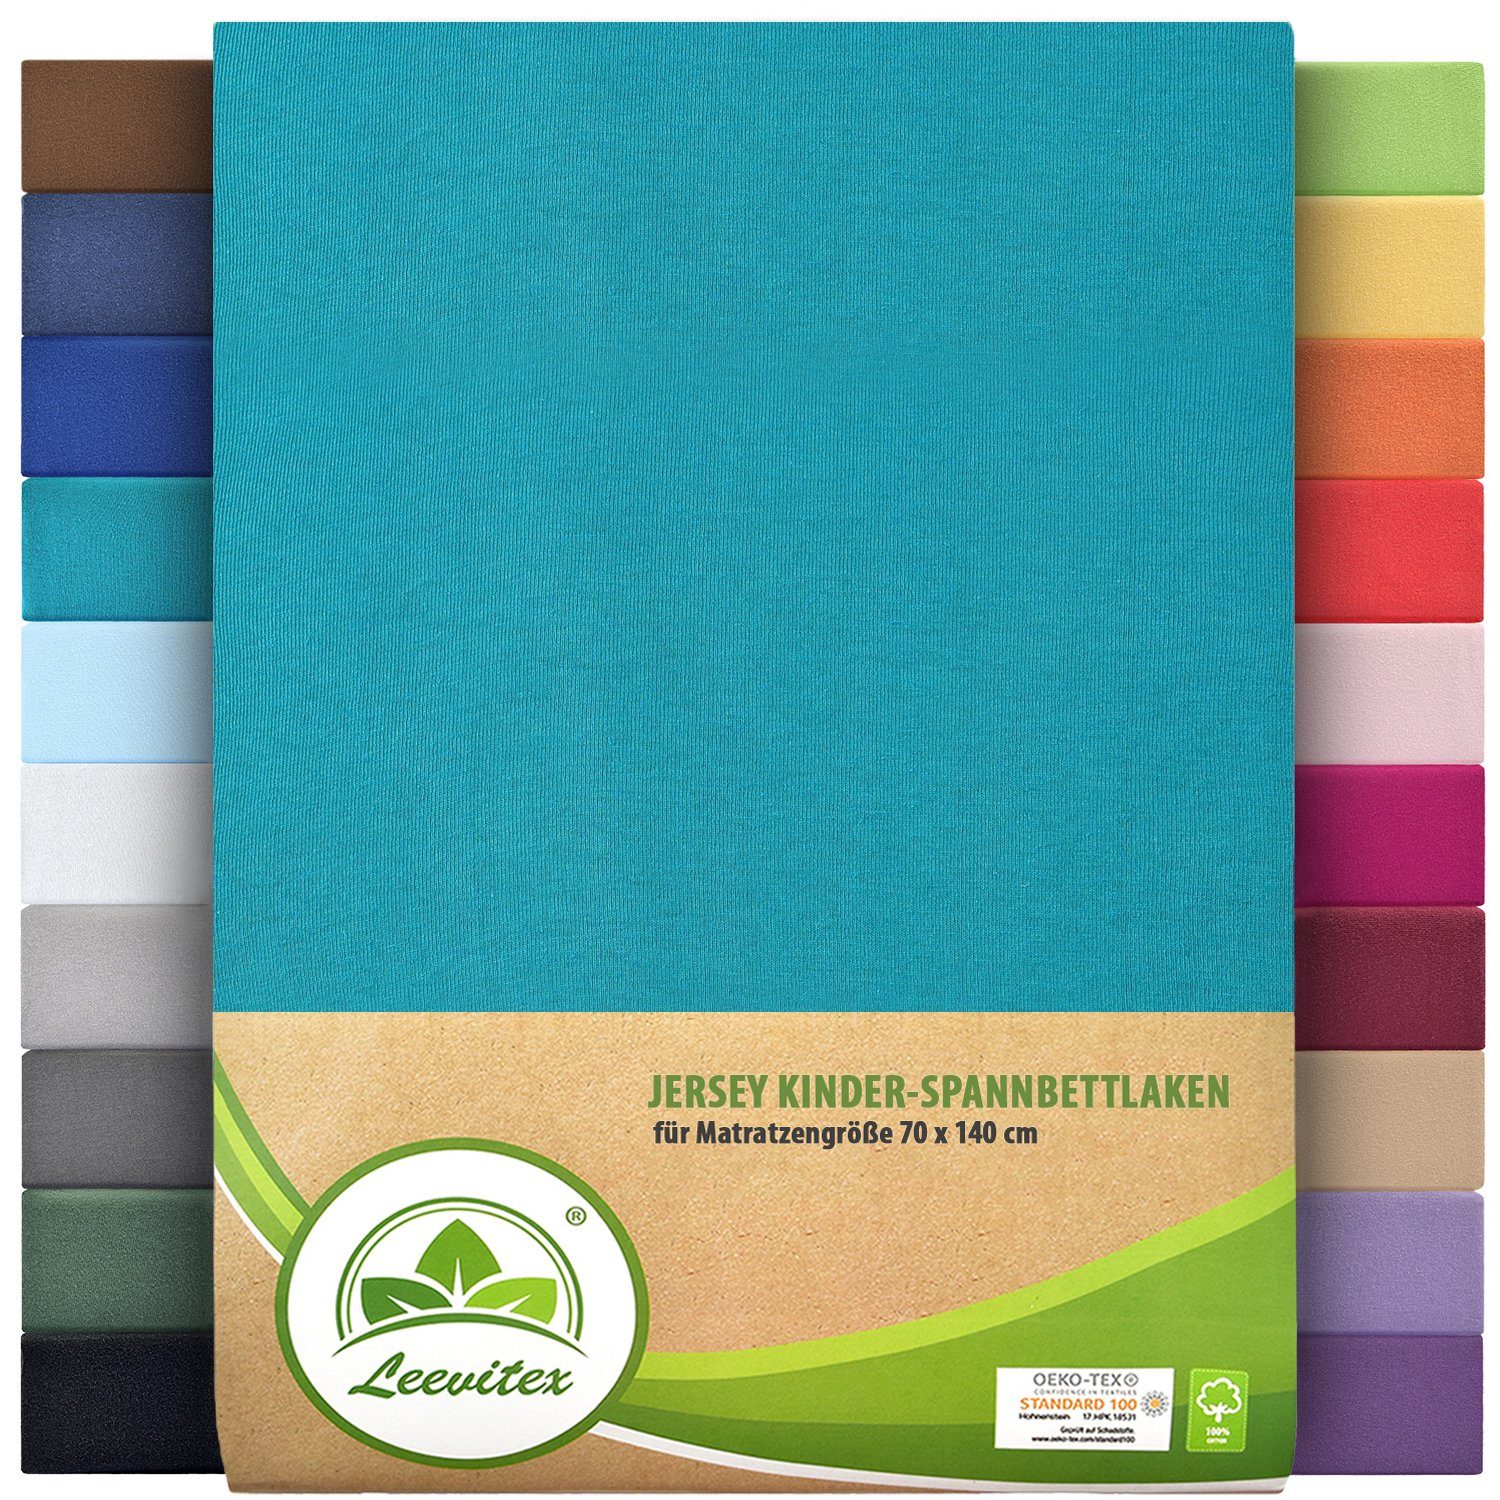 Spannbettlaken Classic Jersey, leevitex®, diverse / Farben Seegrün Petrol und Gummizug: 100% Baumwolle, Größen & rundum, dehnbar, anschmiegsam